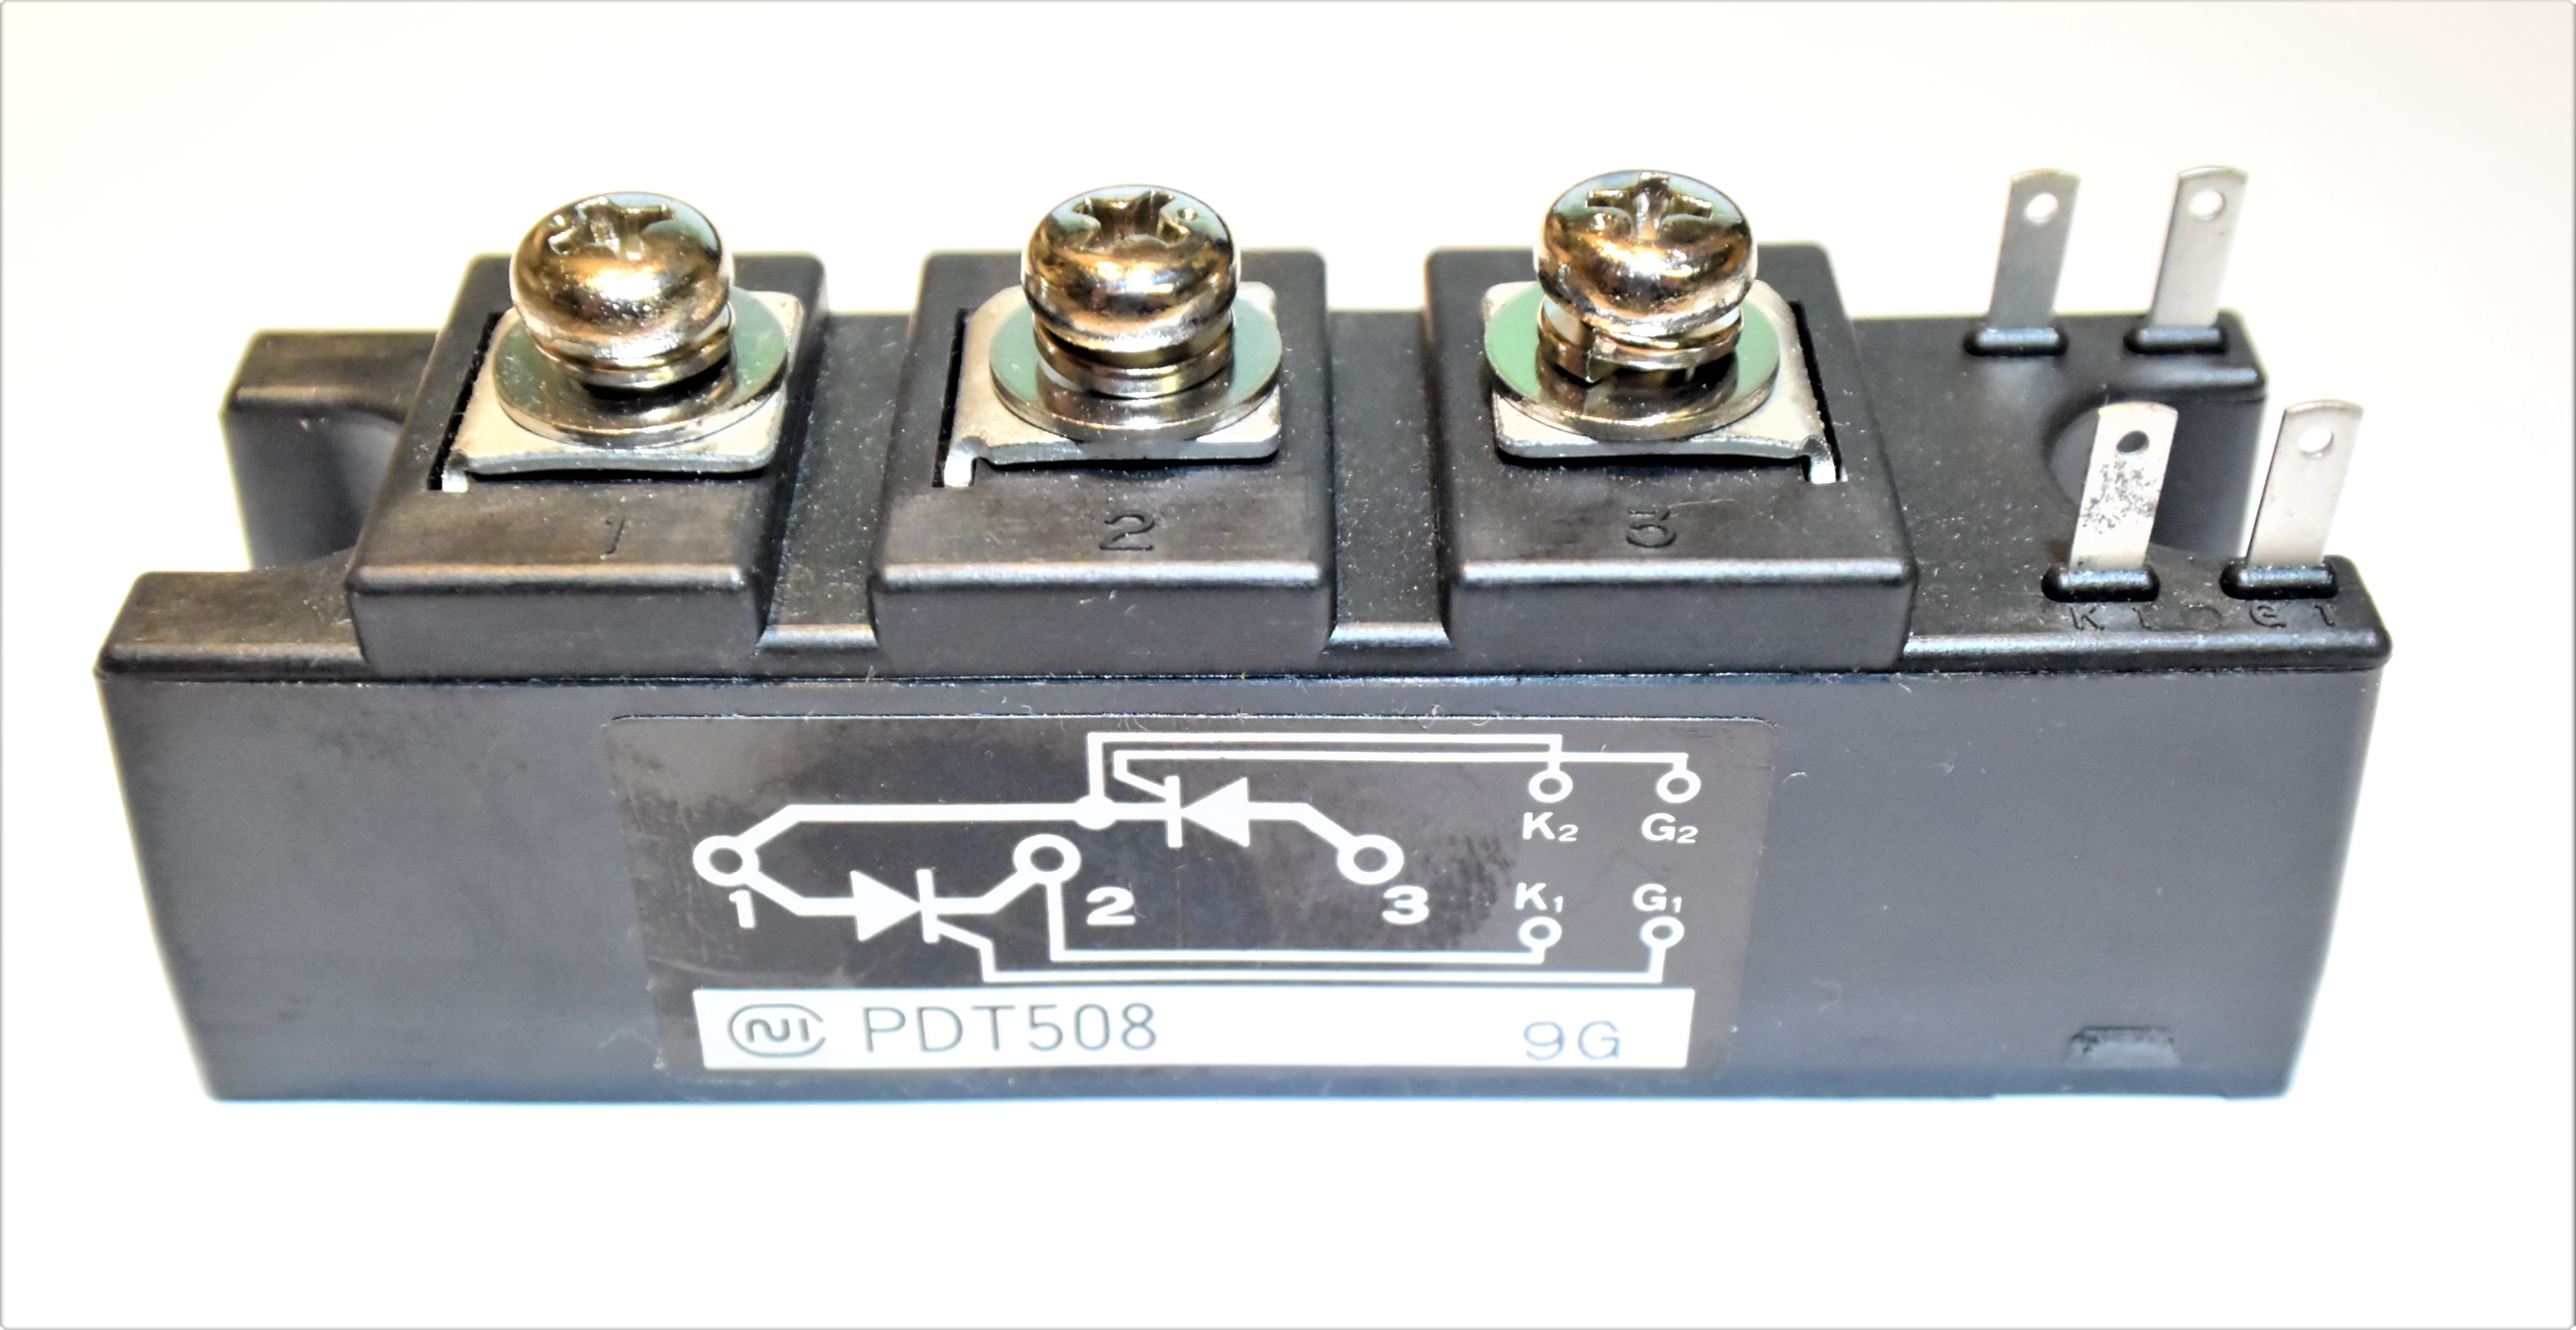 PDT508　　800.0 V  55.0 A  Power Module